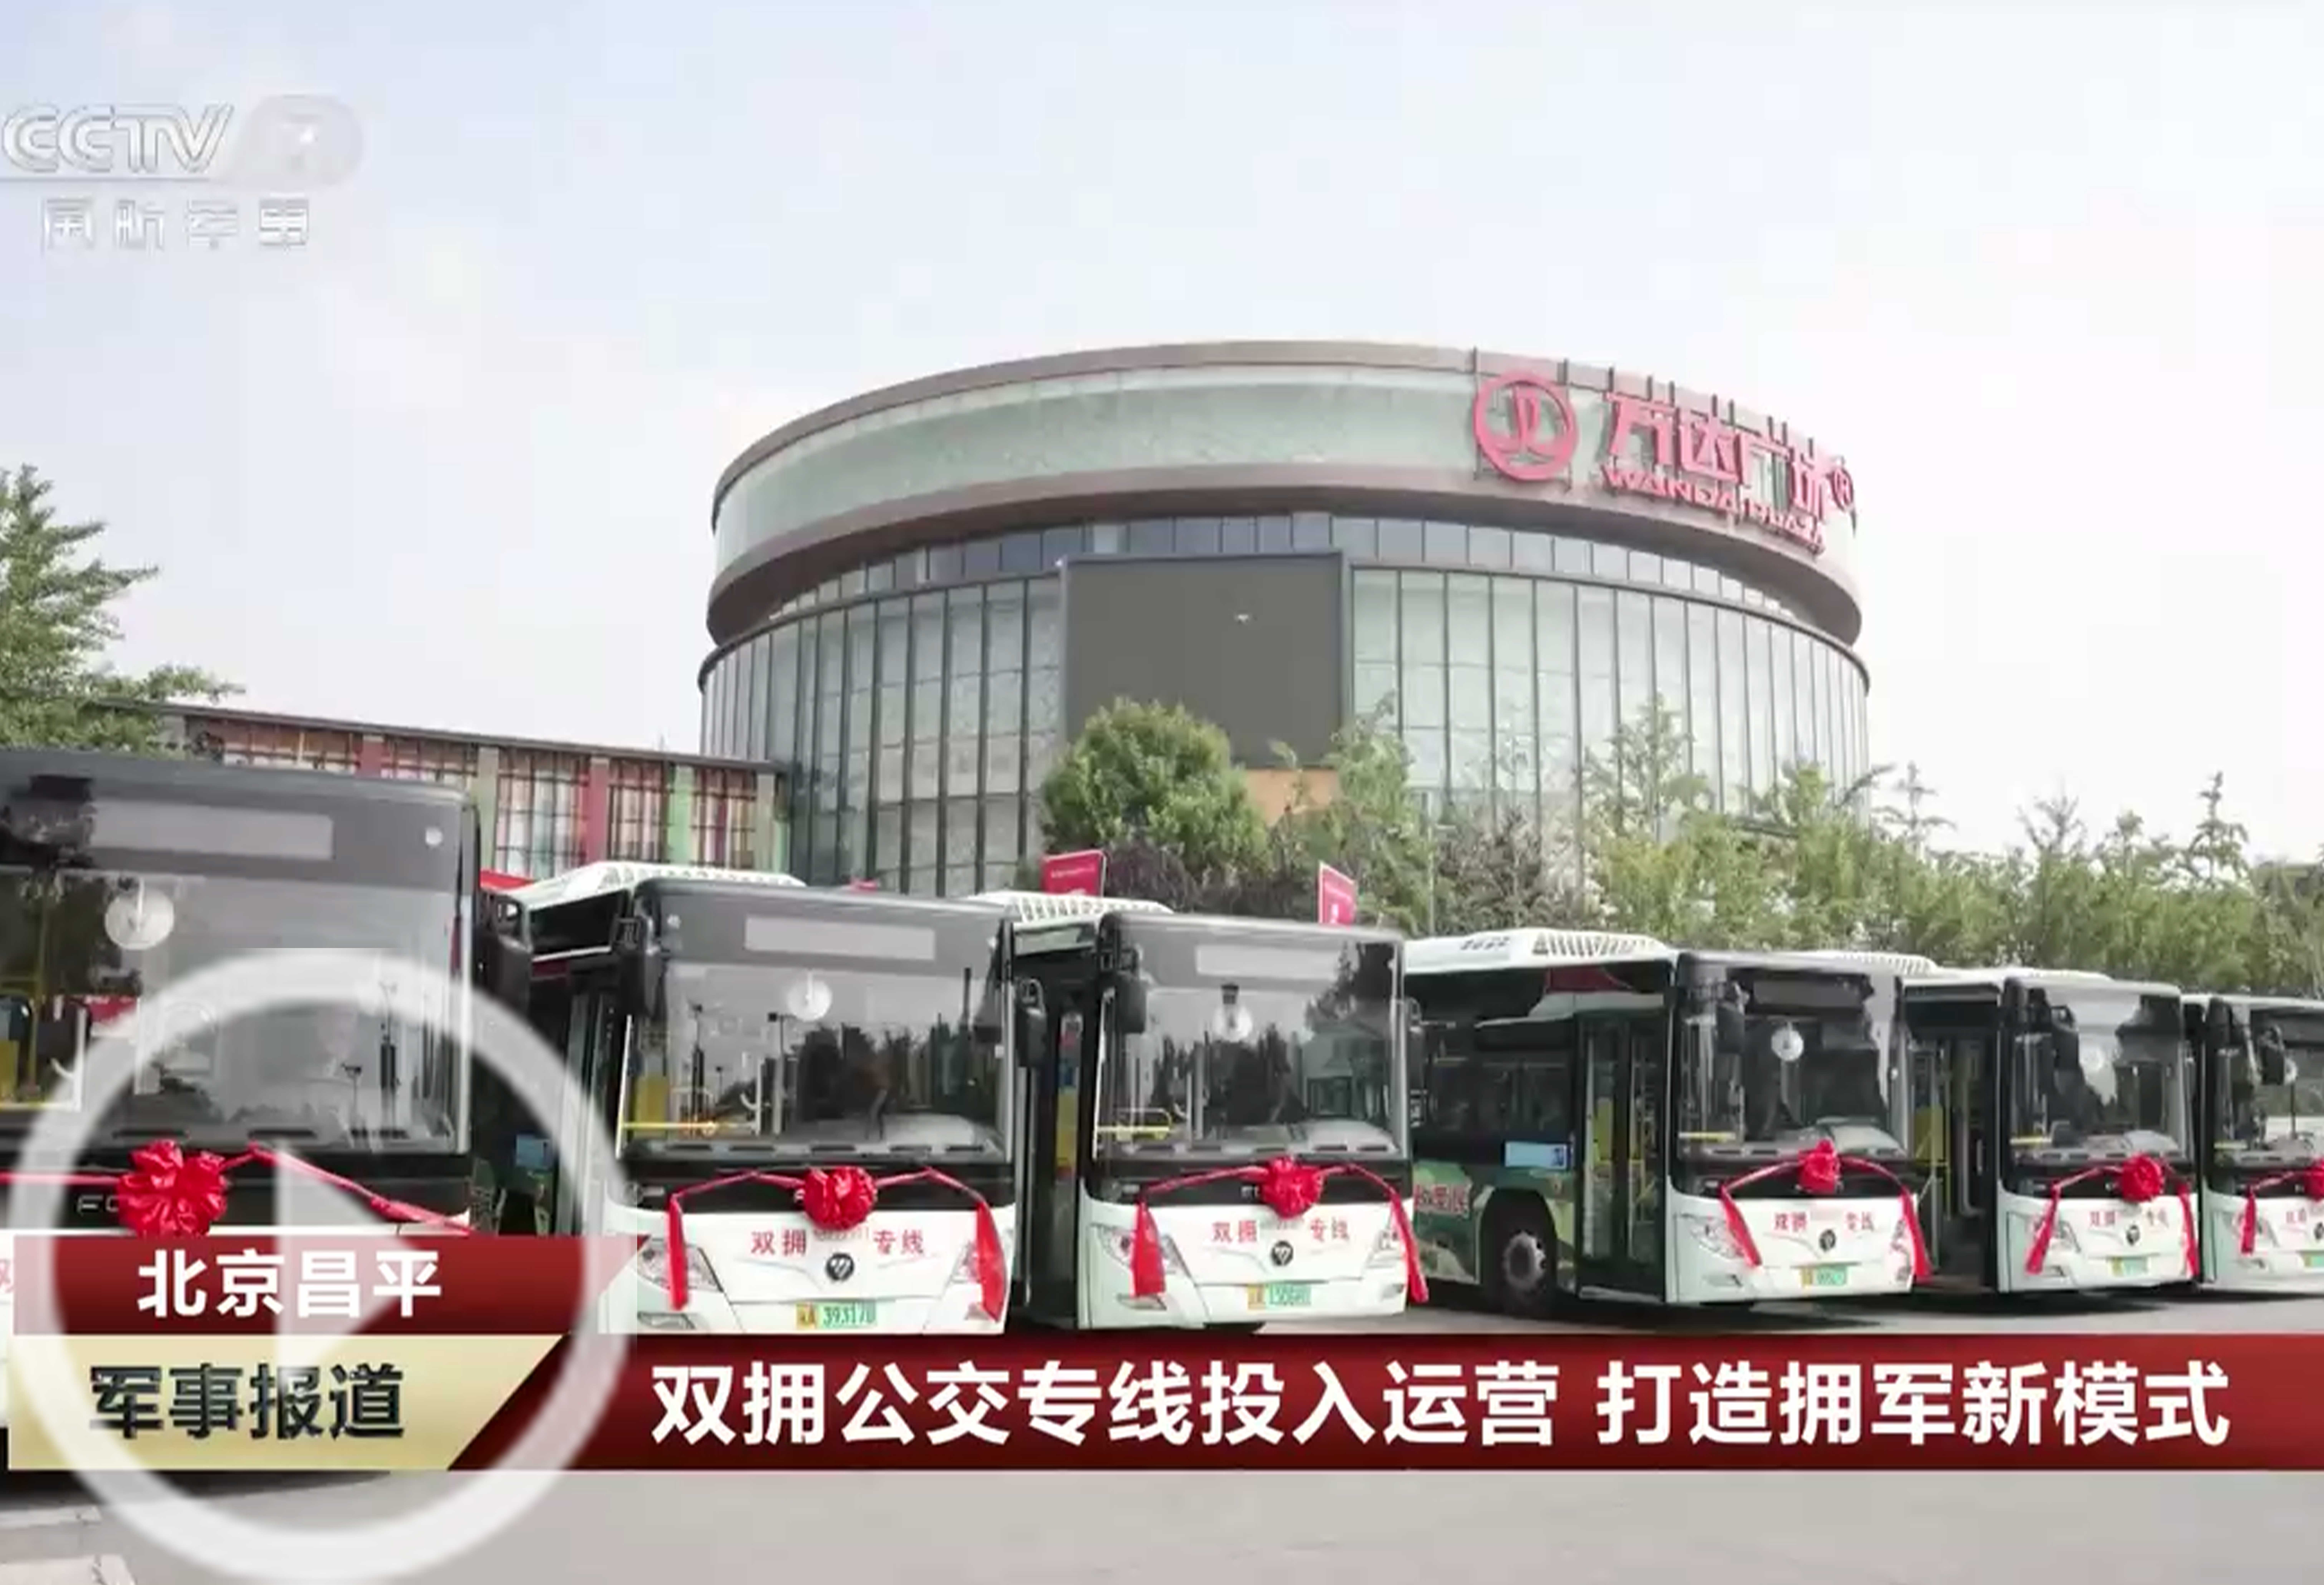 [军事报道]北京昌平 双拥公交专线投入运营 打造拥军新模式